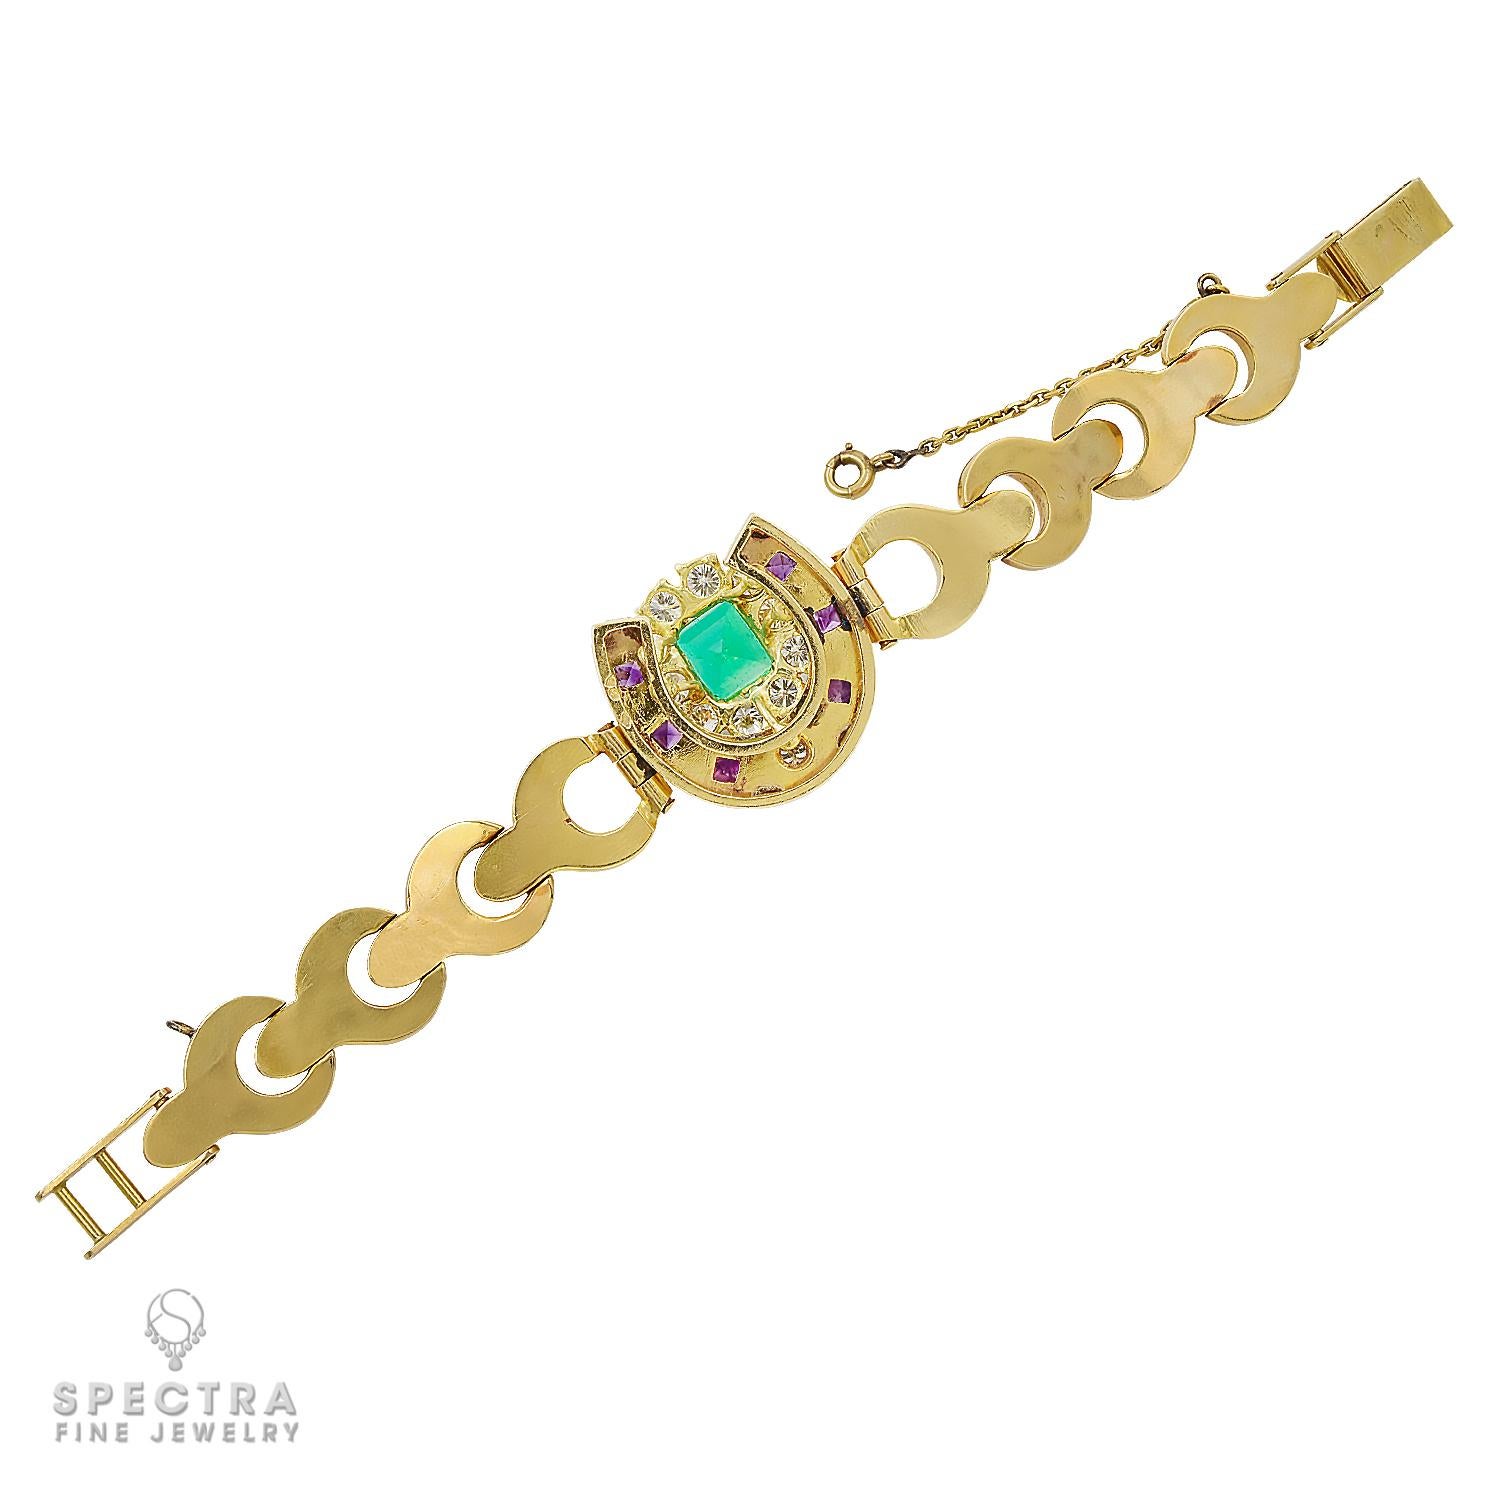 Ce superbe bracelet vintage français, fabriqué approximativement dans les années 1980, est le parfait mélange d'élégance intemporelle et de design exquis. Fabriqué en or jaune 18 carats, il présente en son centre une captivante émeraude de taille